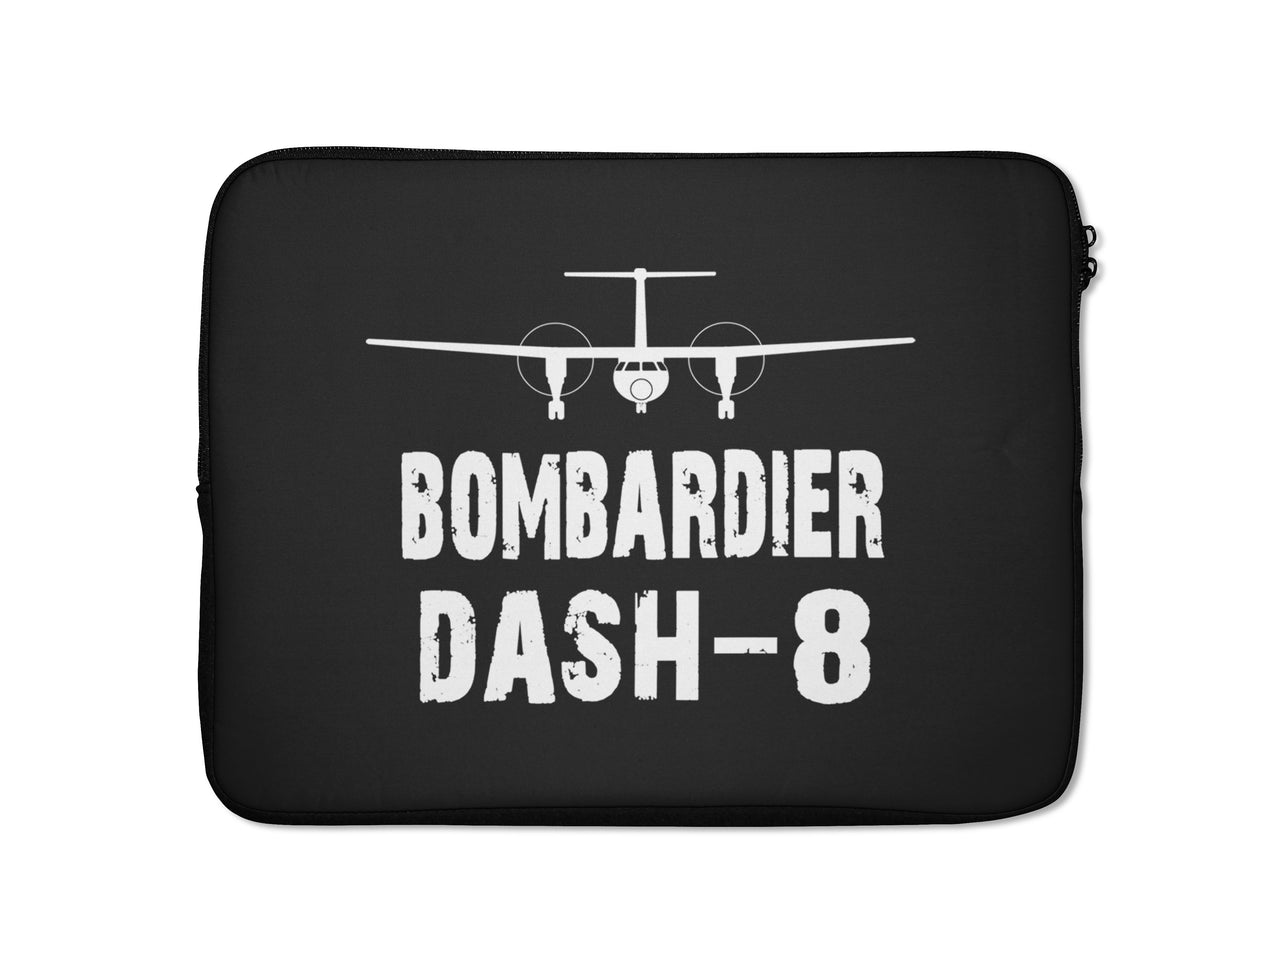 Bombardier Dash-8 & Plane Designed Laptop & Tablet Cases